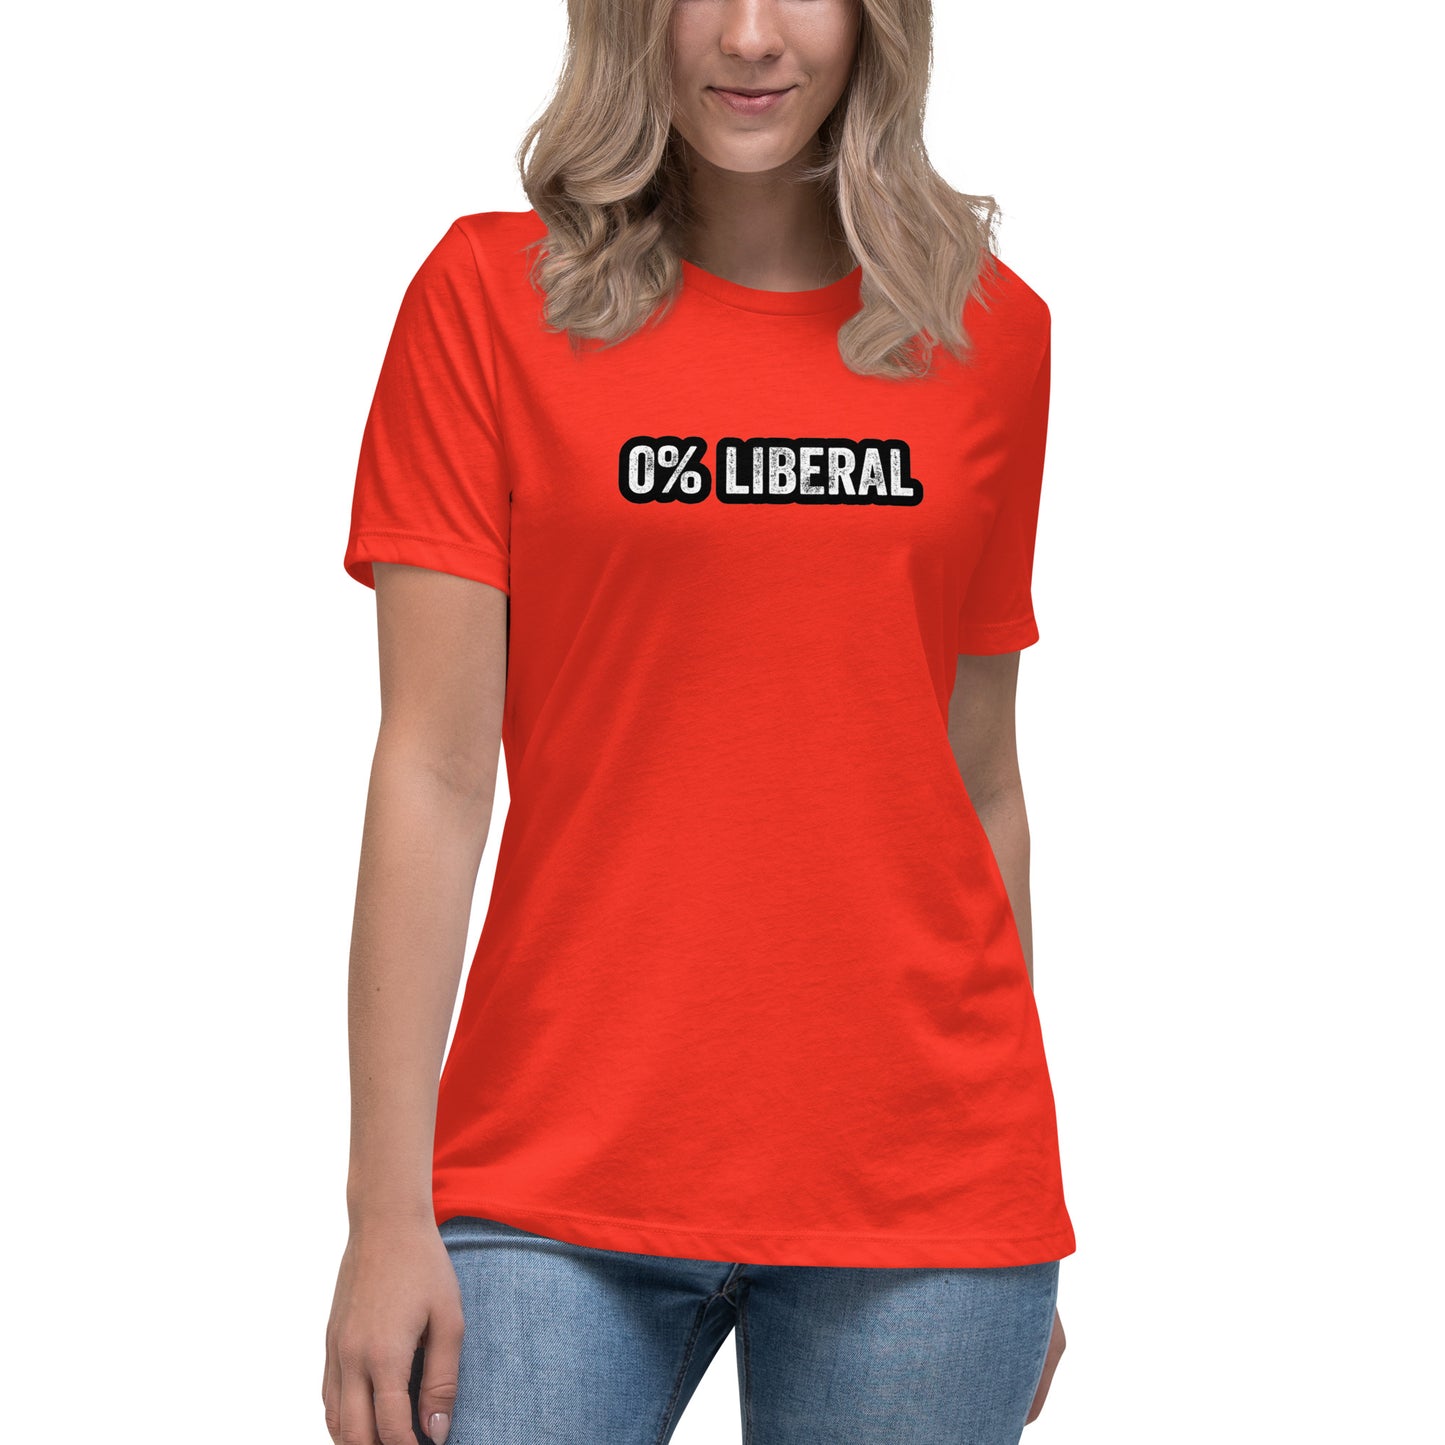 0% Liberal Women's Relaxed T-Shirt